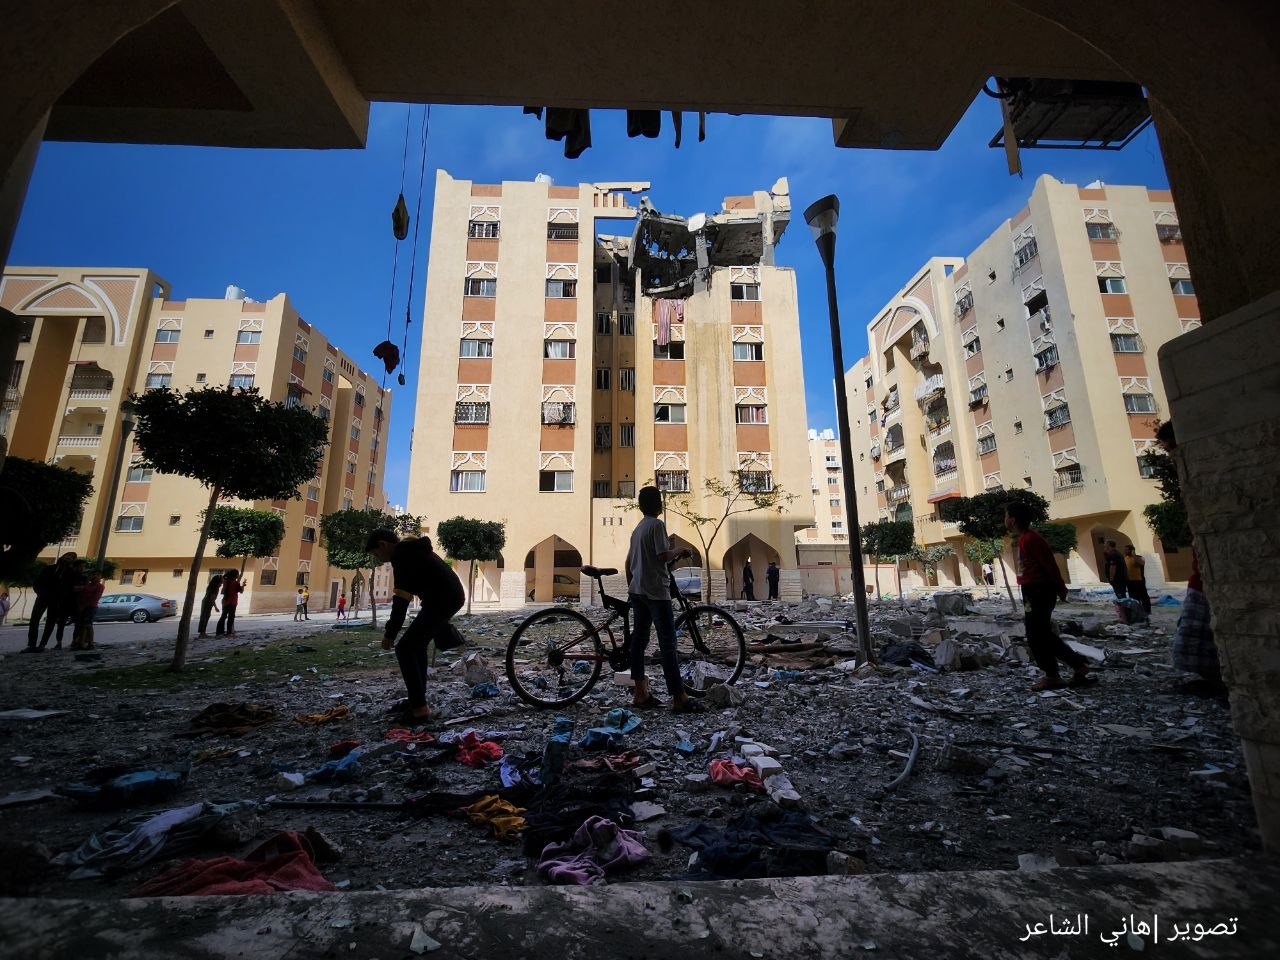 دمار كبير يخلفه القصف الإسرائيلي على شقة سكنية في مدينة حمد القطرية بخانيونس 8.jpg